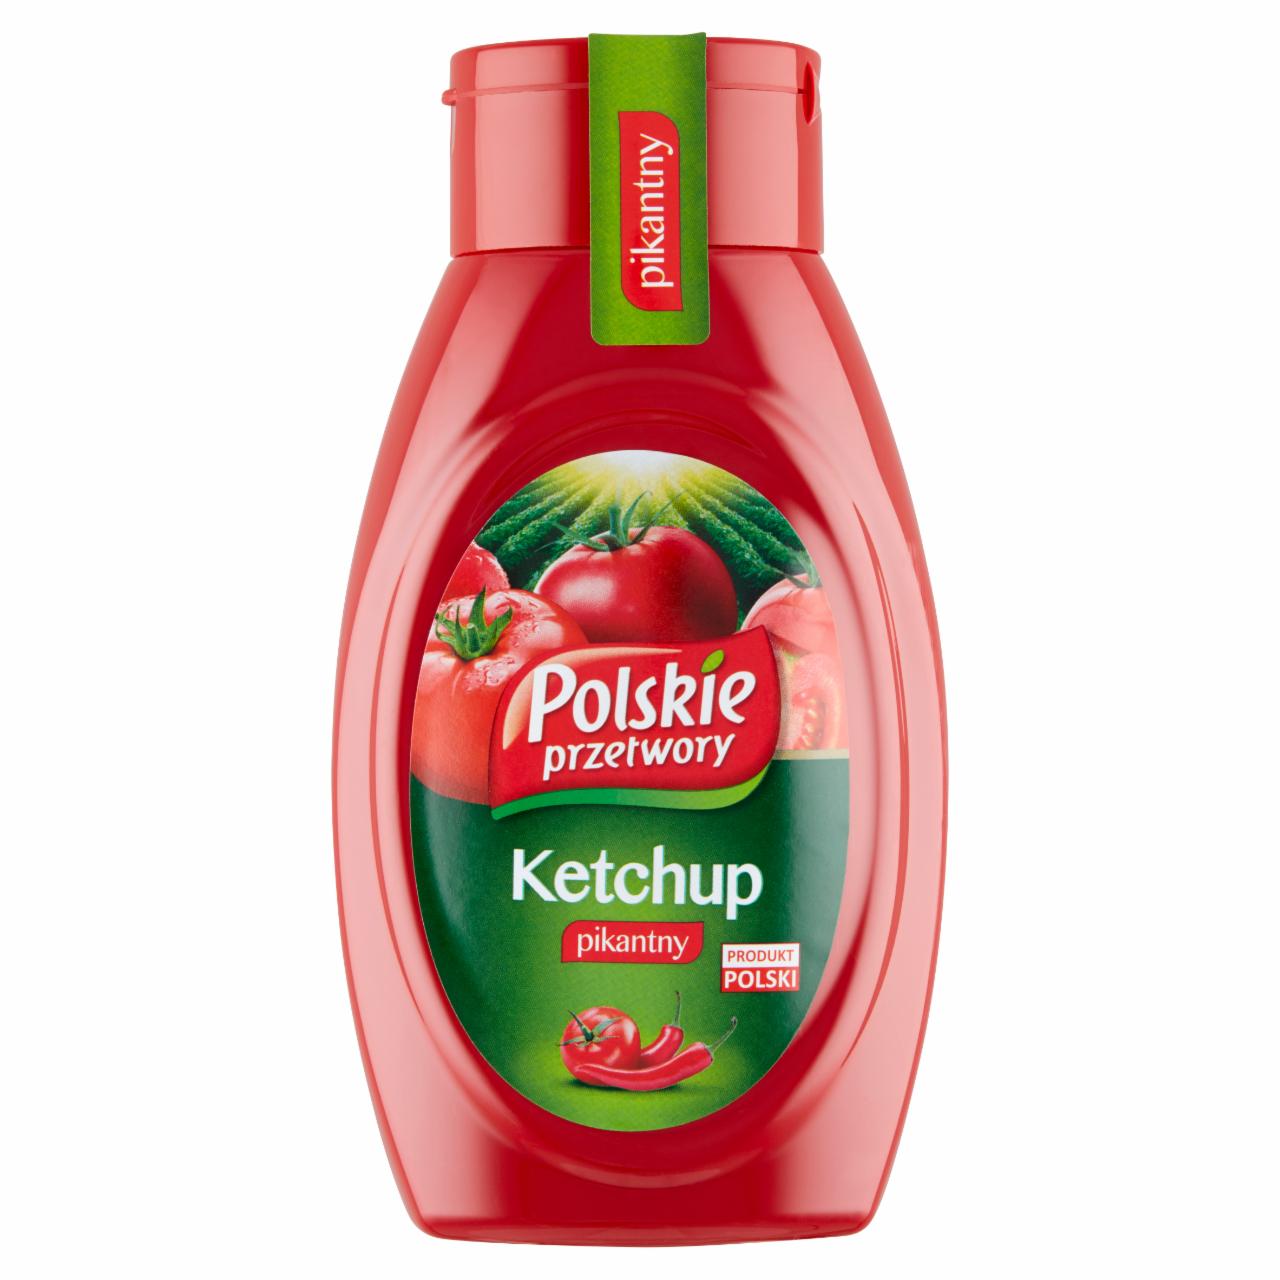 Zdjęcia - Polskie przetwory Ketchup pikantny 450 g